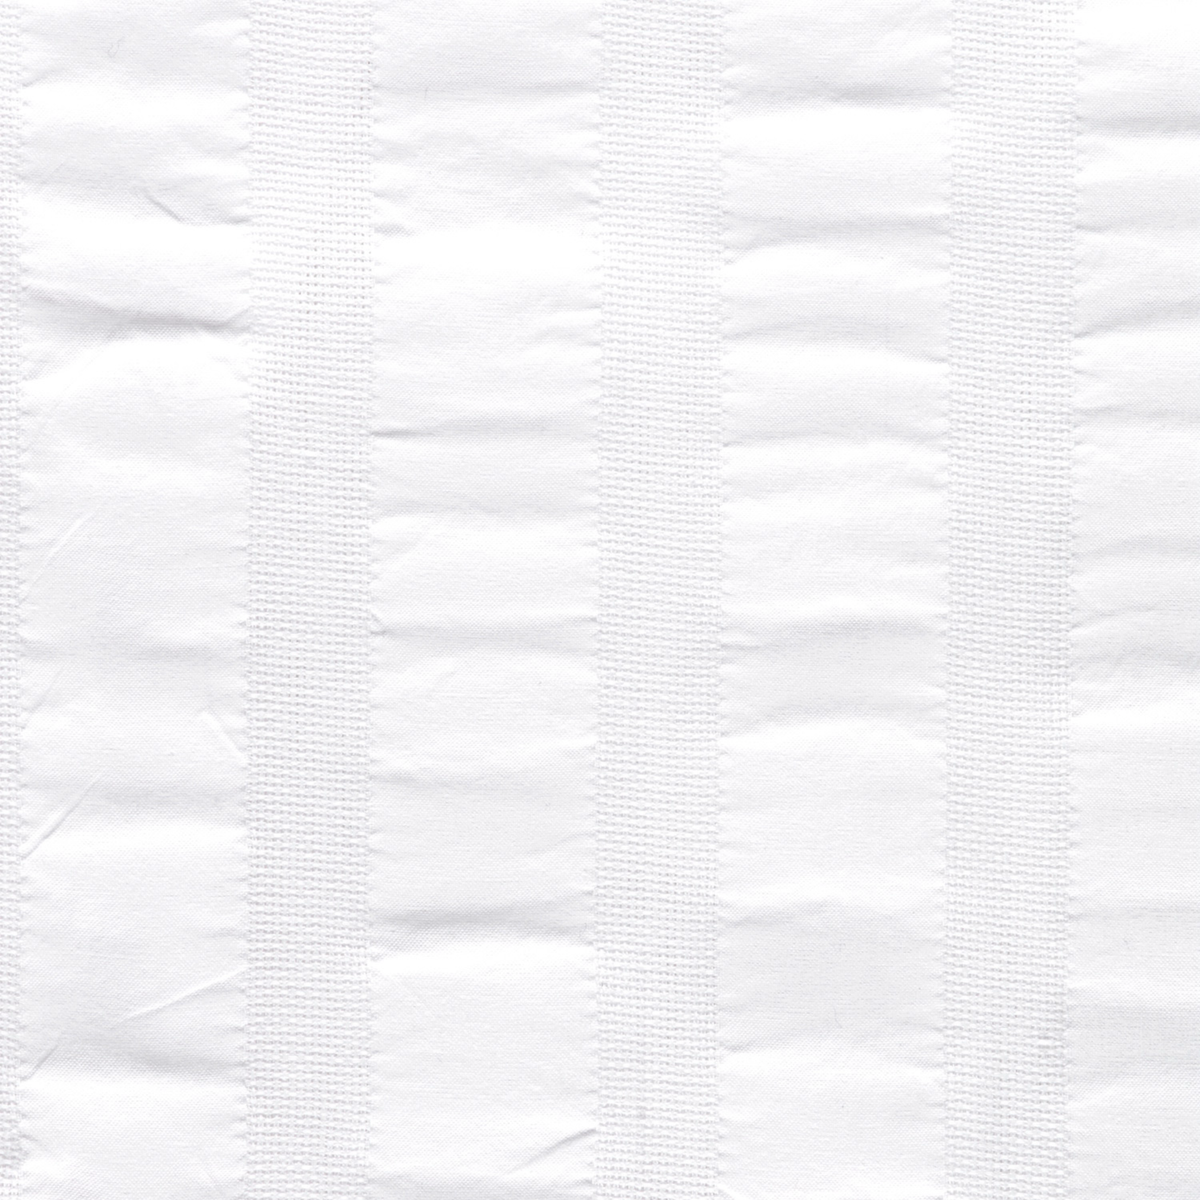 Fabric Sample of White Matouk Panama Shower Curtain